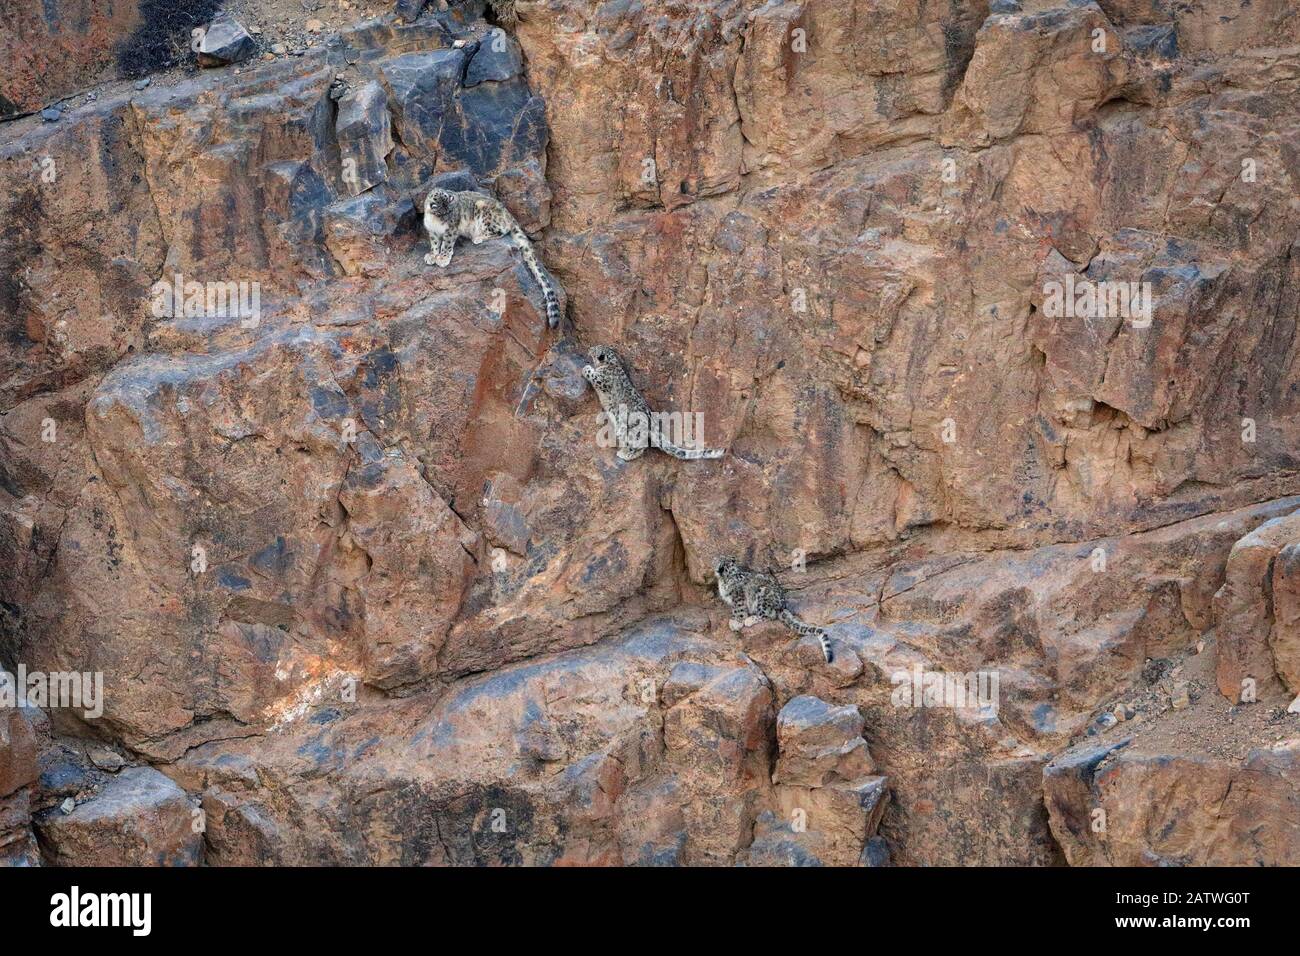 Snow Leopard (Panthera uncia) weiblich mit zwei Jungen, die in der Dämmerung auf einer Felswand in 4400 Metern Höhe klettern, Spiti-Tal, Biosphärenreservat kalte Wüste, Himalaya-Gebirge, Himachal Pradesh, Indien, Februar Stockfoto